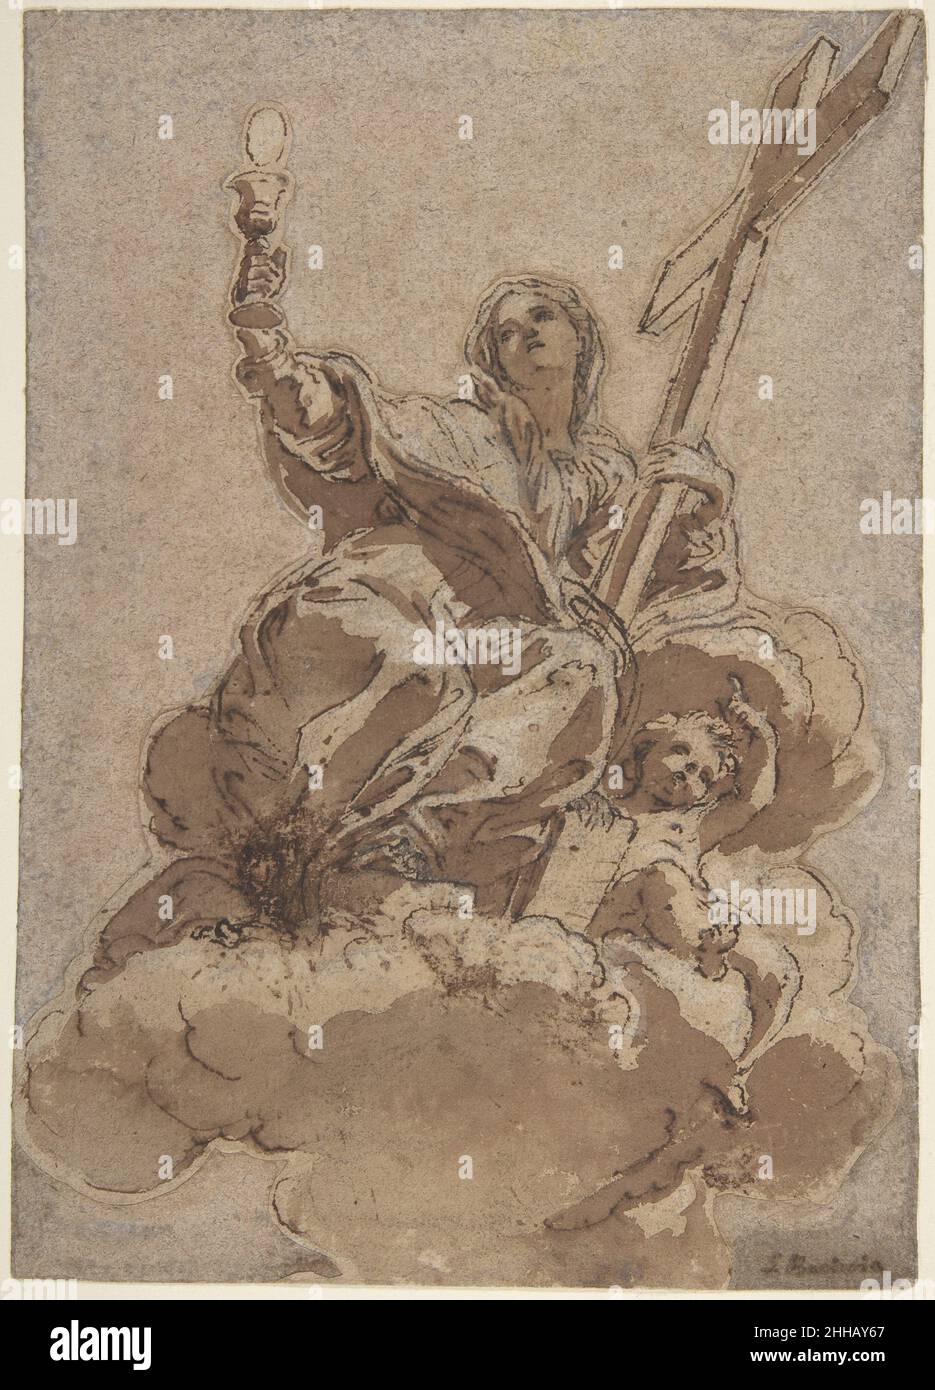 Allegorische Figur des Glaubens 1672 Giovanni Battista Gaulli (Il Baciccio) der Italiener Baciccio entwarf die Fresken im Gewölbe von Santa Marta al Collegio Romano in Rom um 1672. Die Dekoration wurde als eine Serie von drei Tondi konzipiert, die jeweils von Pendentives mit Personifikationen von Tugenden eingerahmt wurden. Diese Studie ist für eine der allegorischen Figuren, den Glauben, bestimmt. Die Zeichnung wurde von Maria Vittoria Brugnoli (1966: Siehe hier 'Referenzen') als Gaullis Studie für die allegorische Glaubensfigur identifiziert, die in einem dreieckigen Teil der Gewölbedecke in der Kirche Santa Marta al Collegio Romano in Rom erscheint. Stockfoto